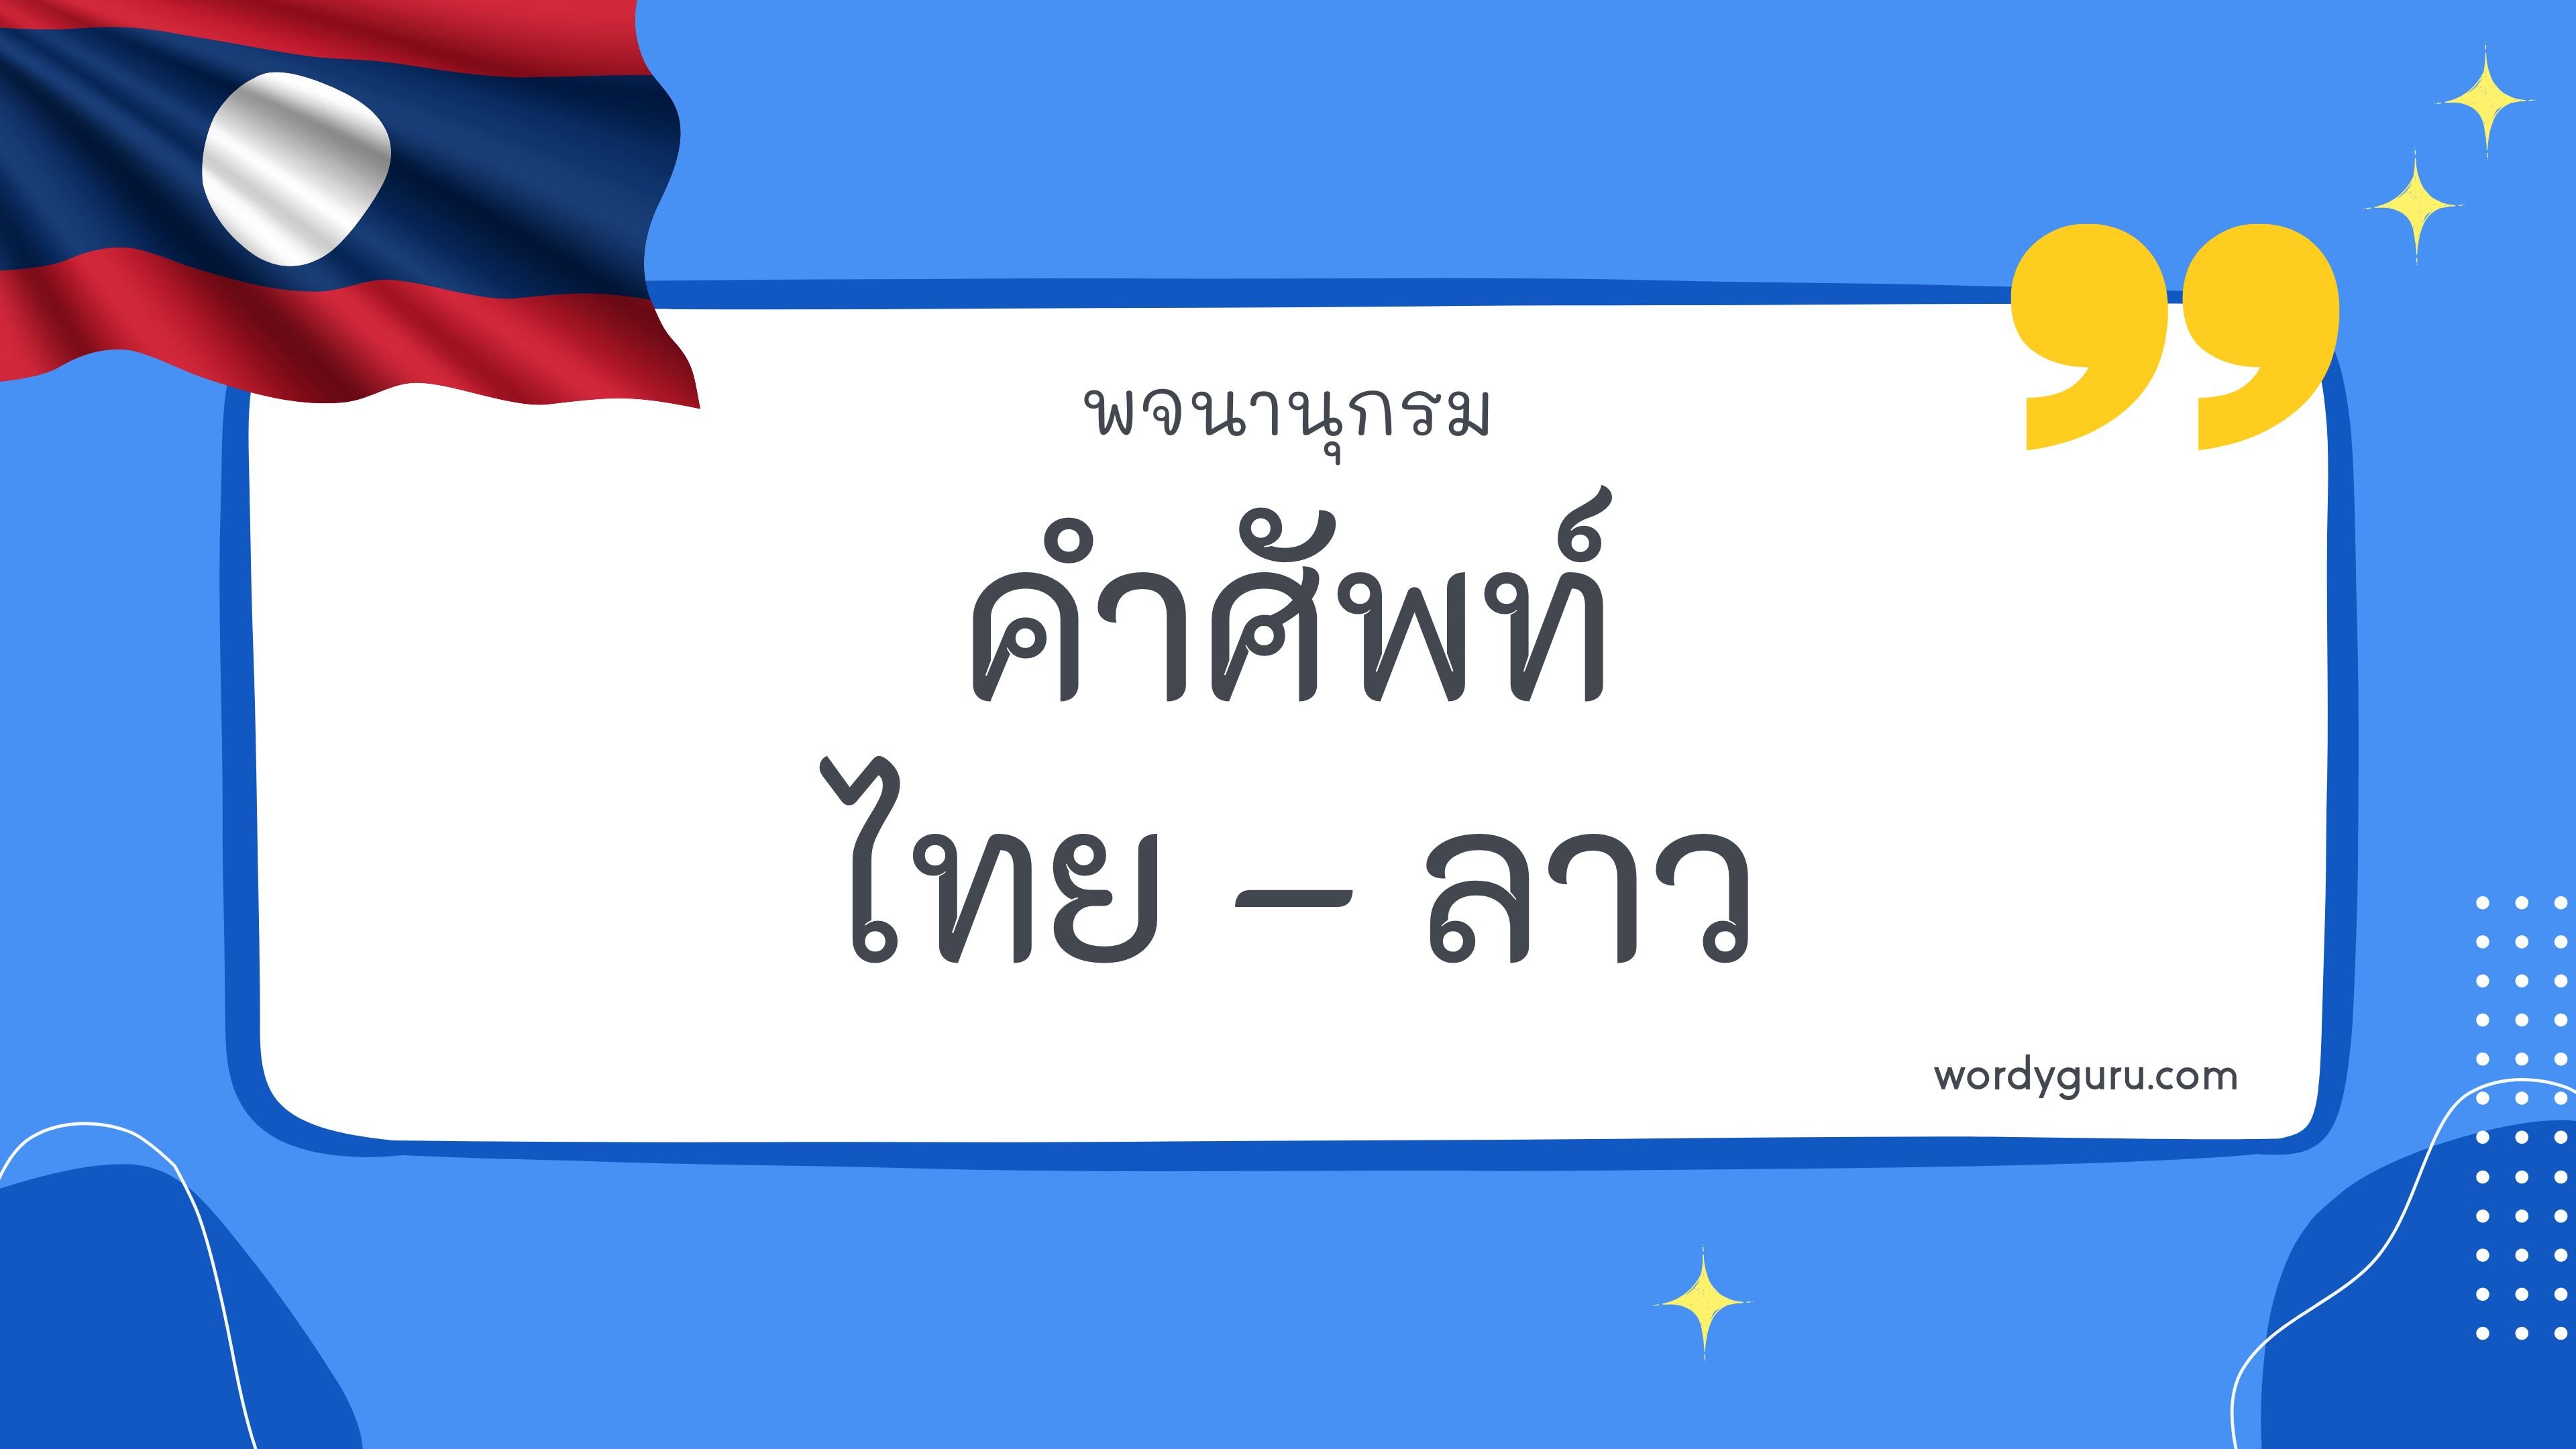 คำศัพท์ไทย – ลาว เกี่ยวกับ คำถาม ตามที่เคยรู้จัก คำศัพท์ภาษาไทย - ลาว มีอยู่หลายคำ จะมีคำไหนที่เรารู้จักไหมนะ